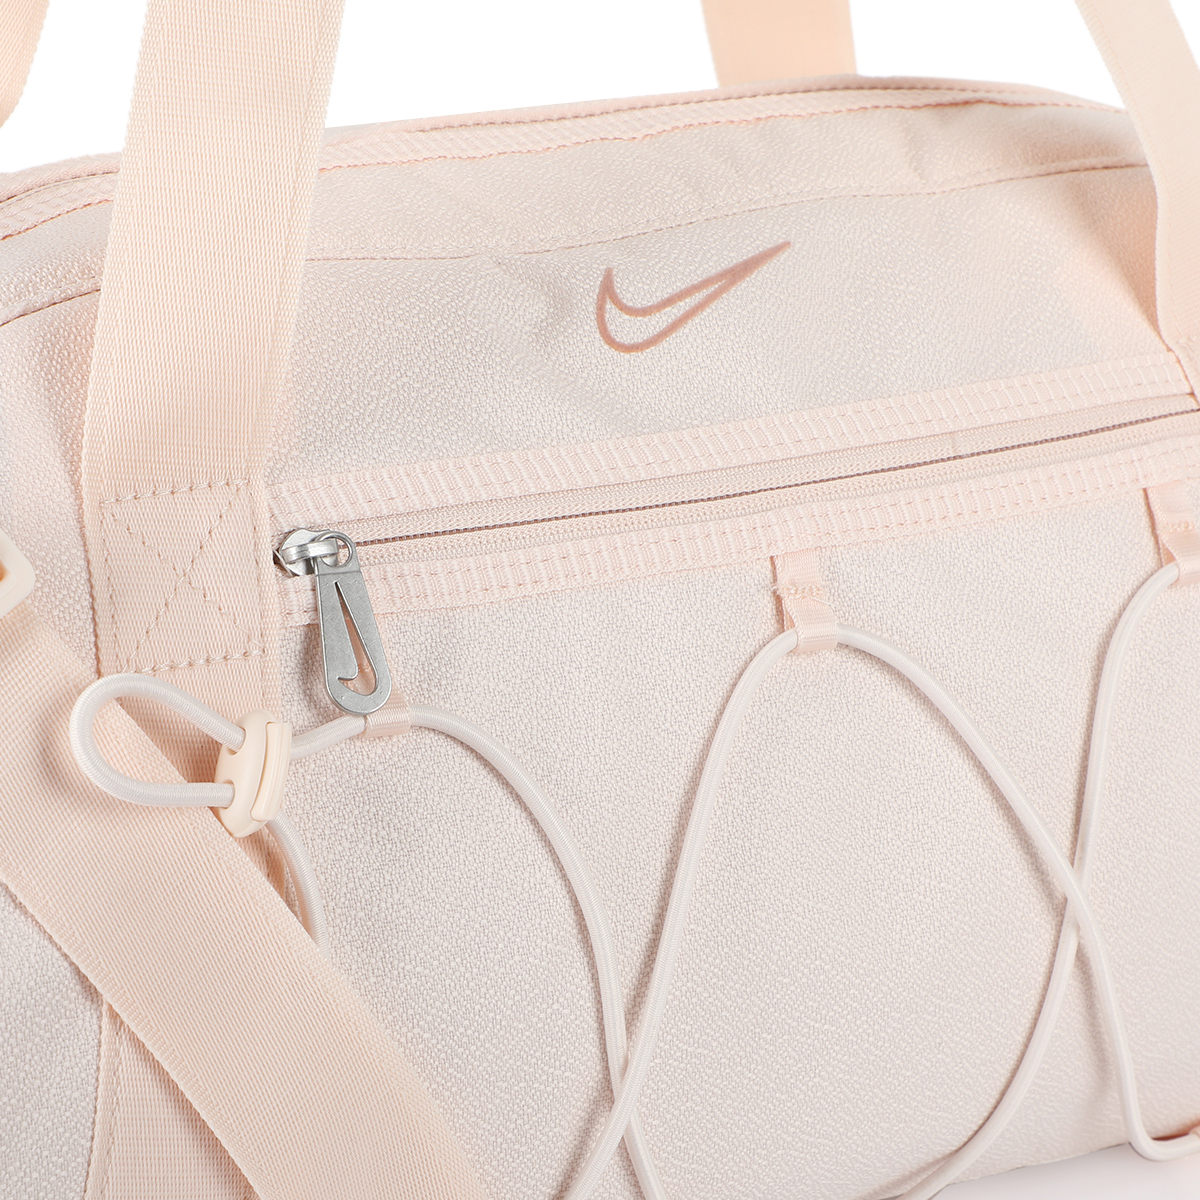 Nike One Training tote bag in beige